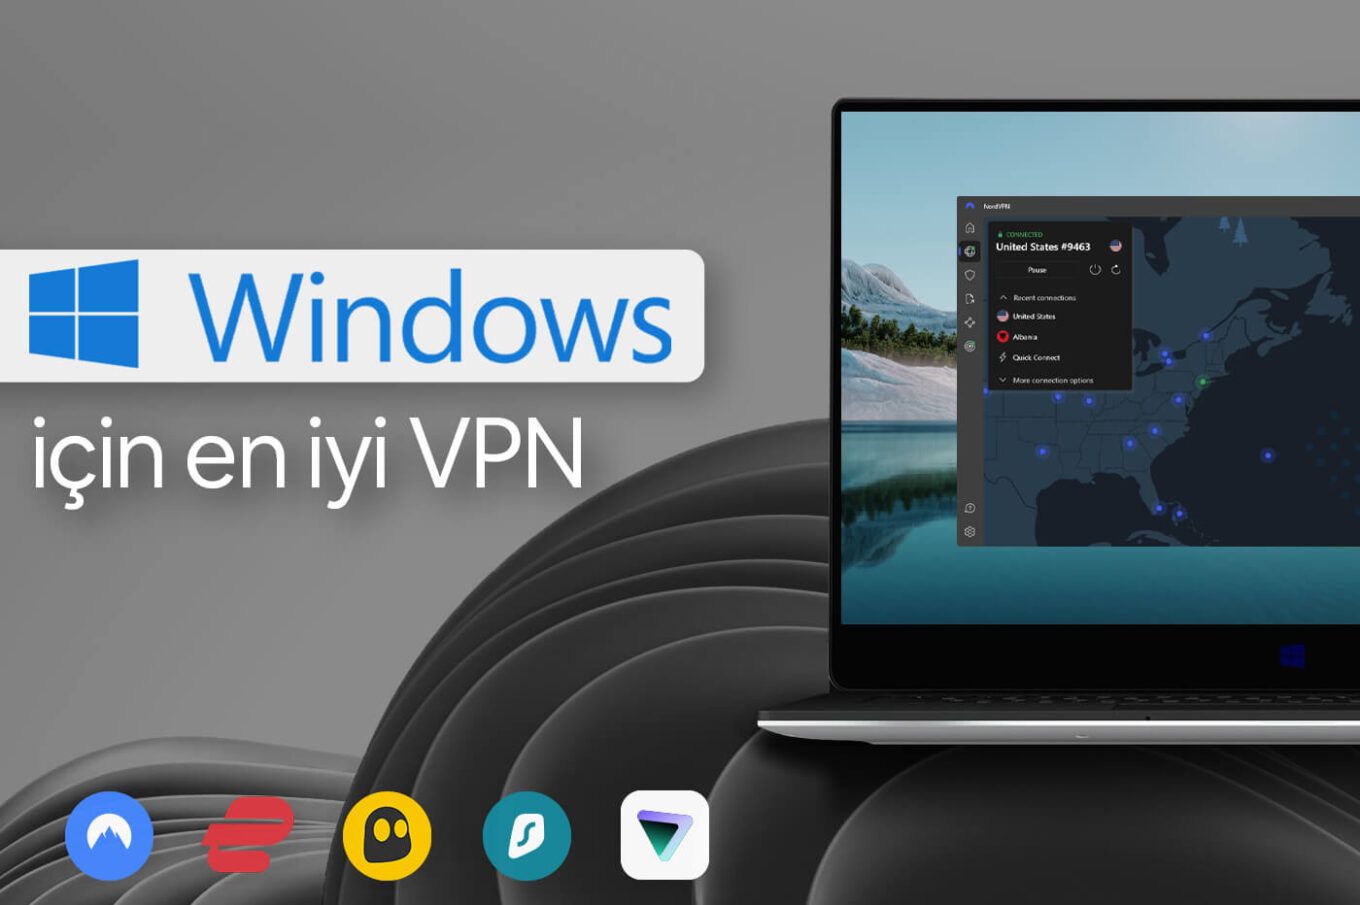 Windows Için en iyi VPN